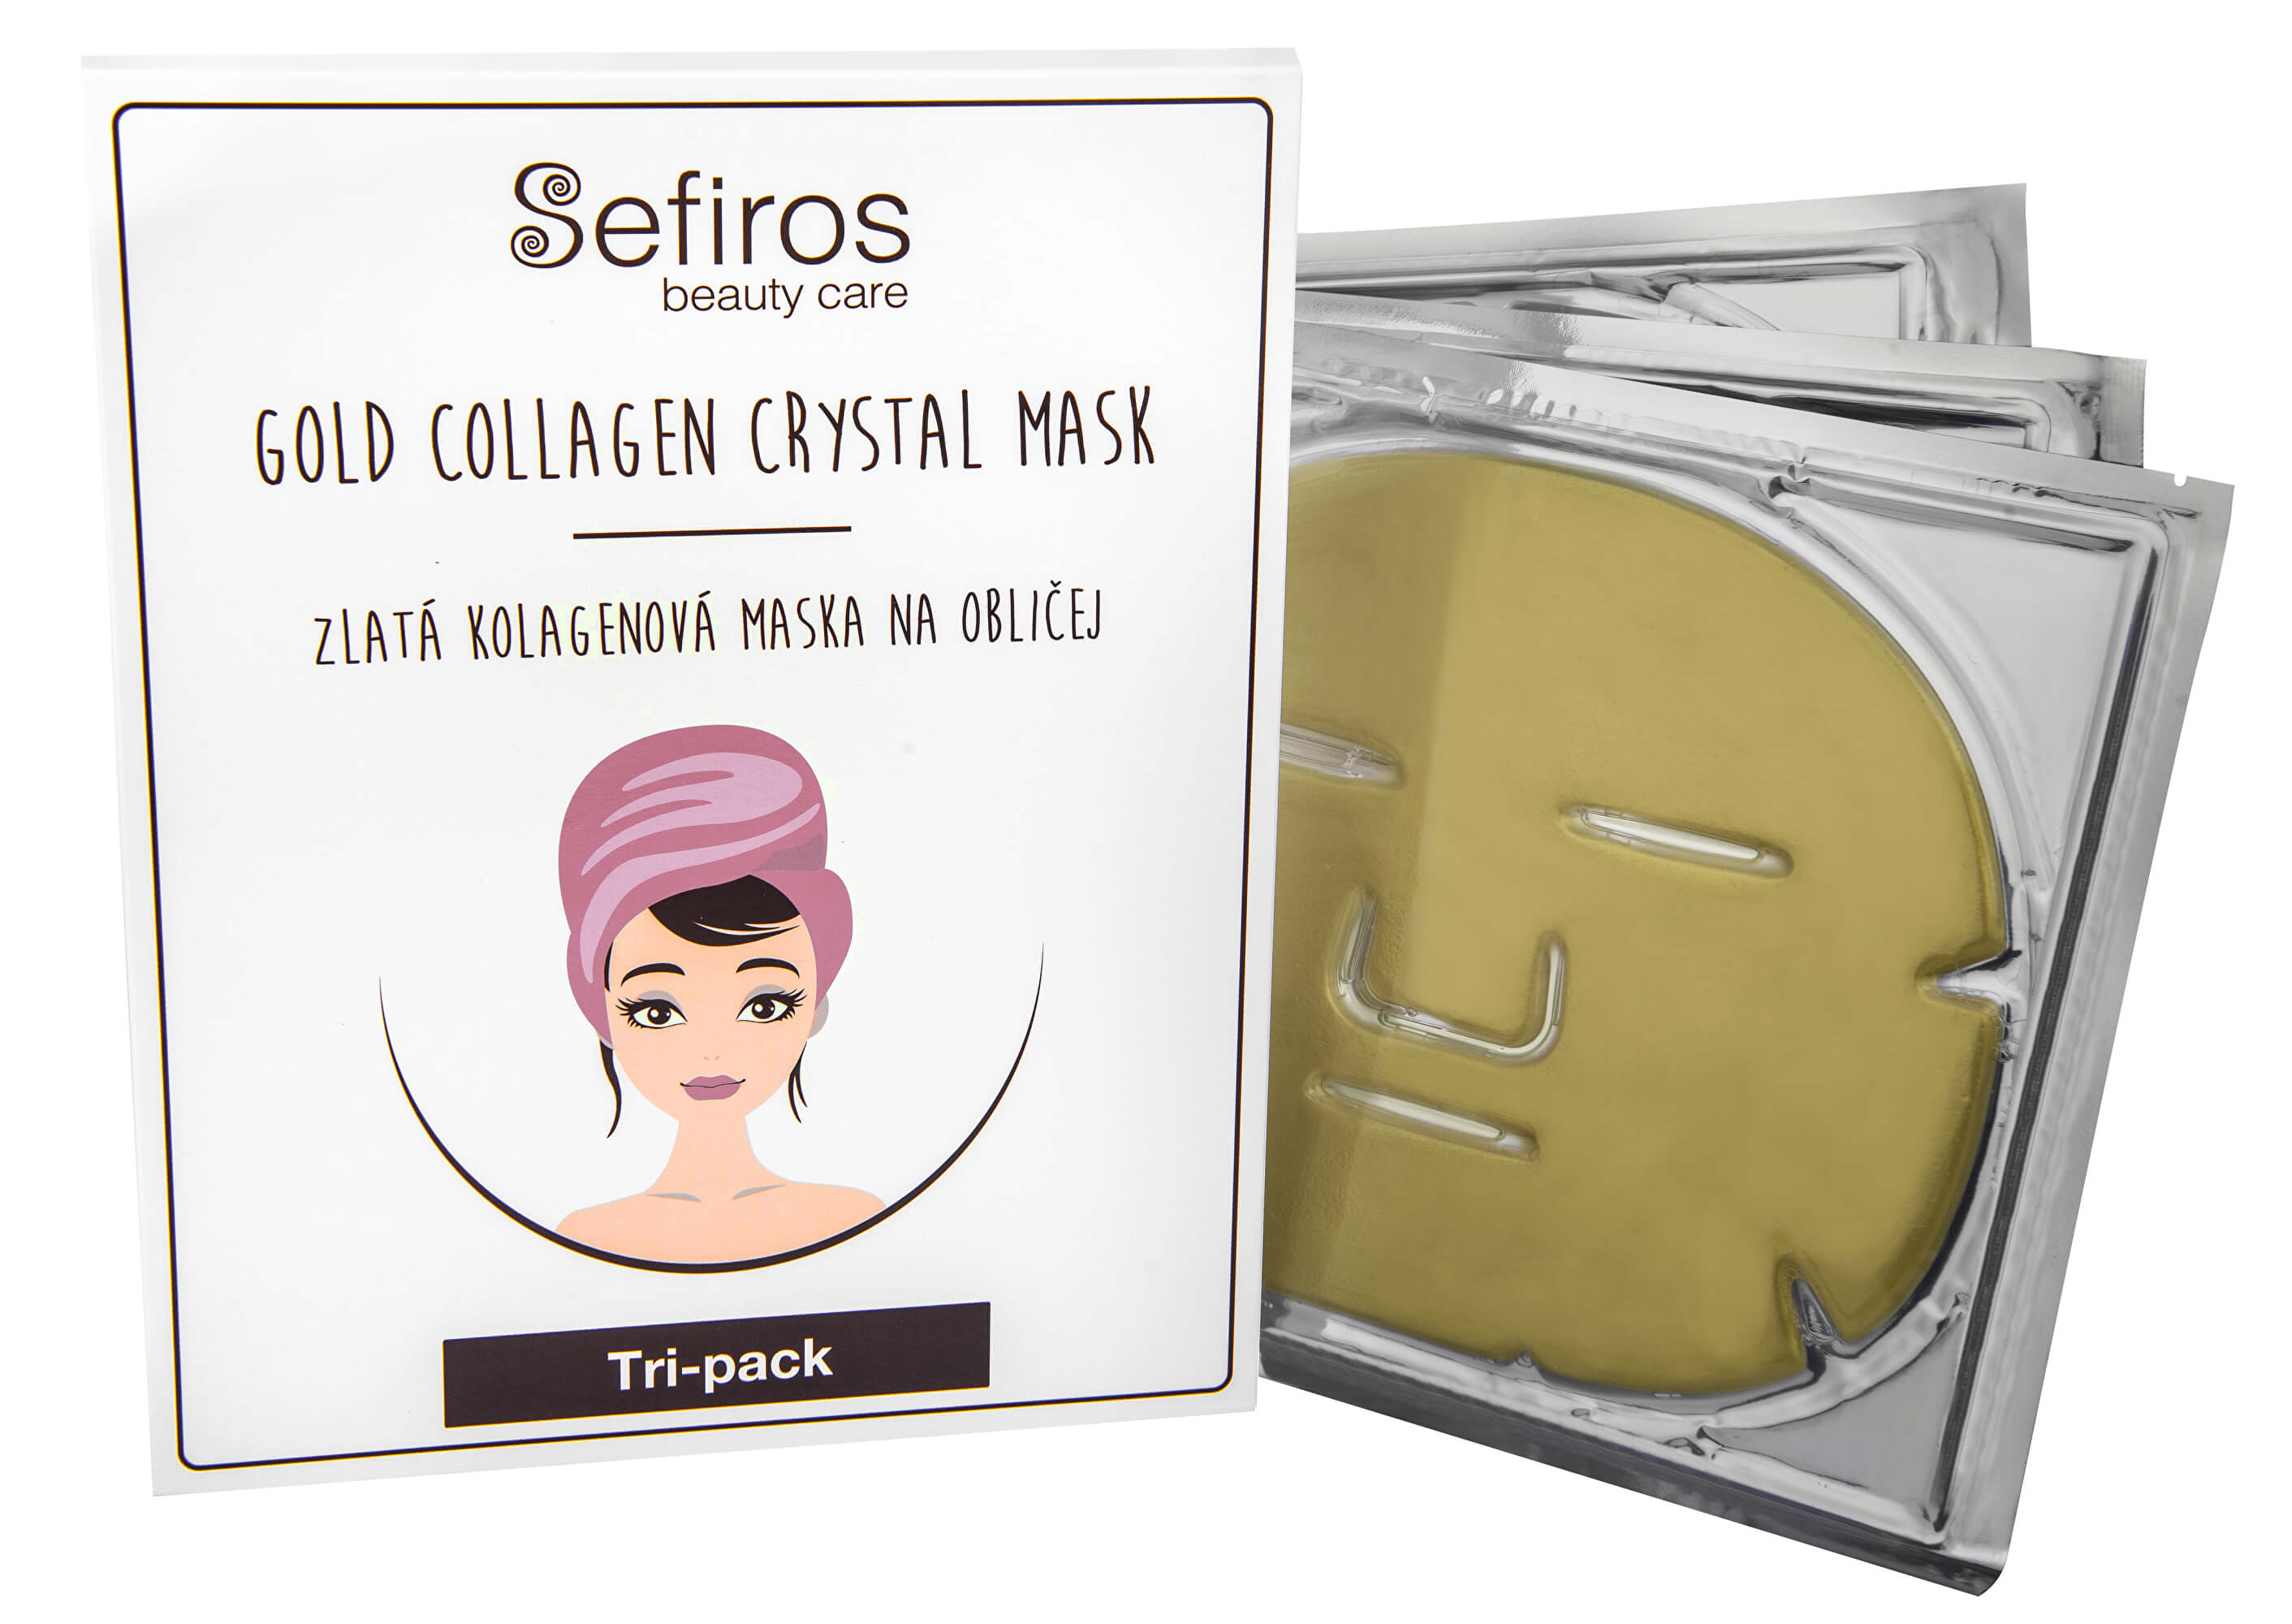 Sefiross Zlatá kolagenová maska na obličej (Gold Collagen Crystal Mask) 3 ks